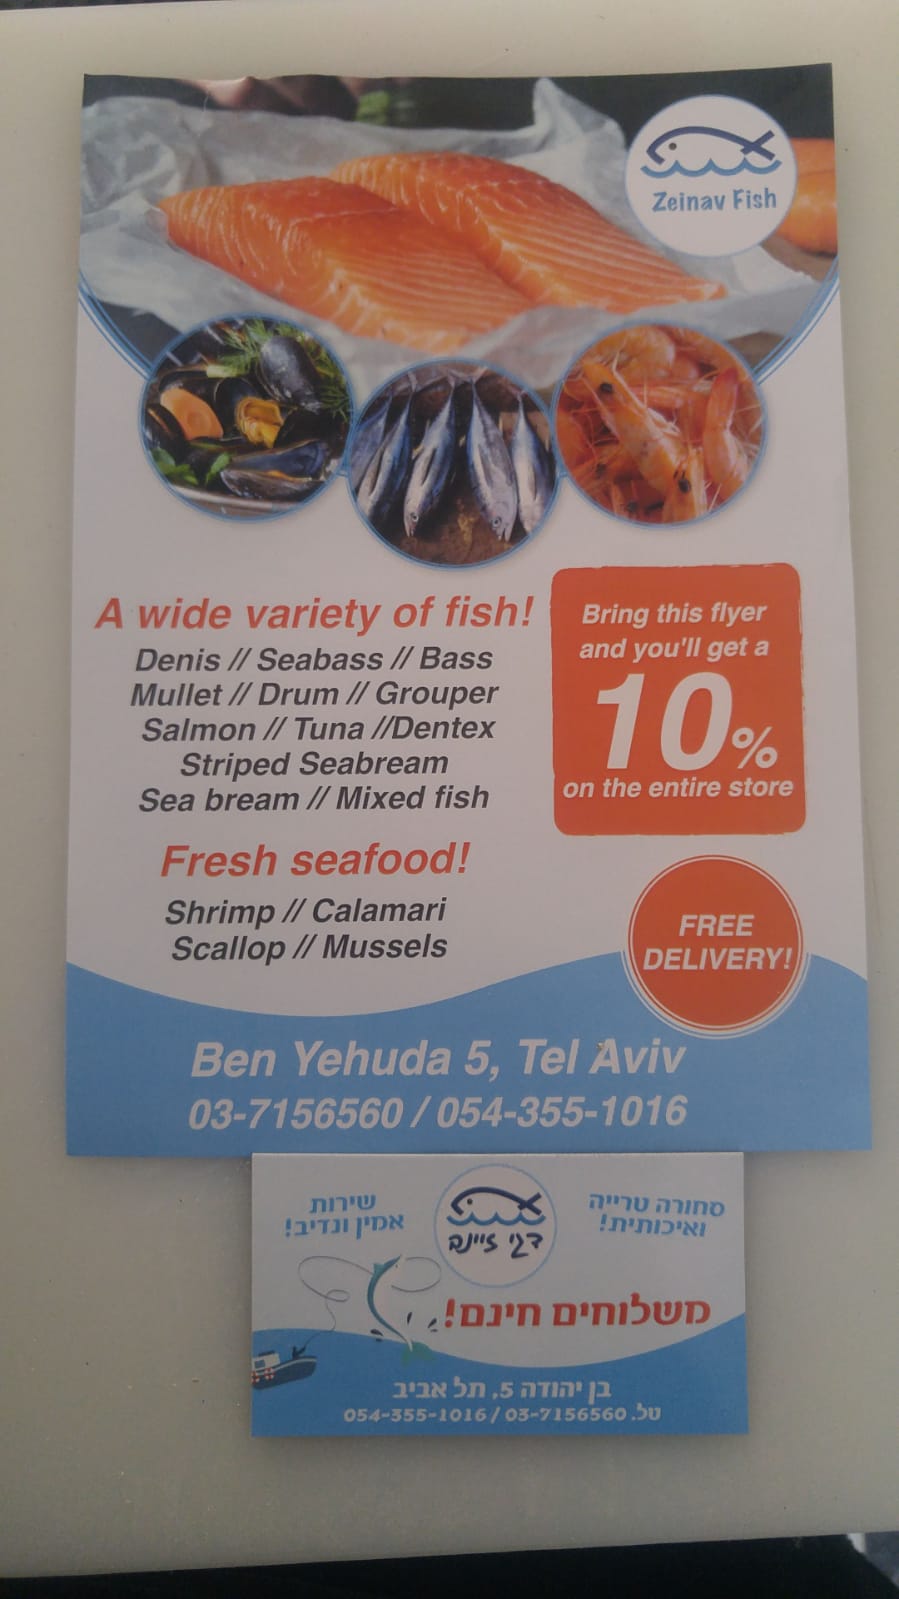 الاثنين: افتتاح مسمكة زينب - أجود أنواع الأسماك وفواكه البحر بانتظاركم